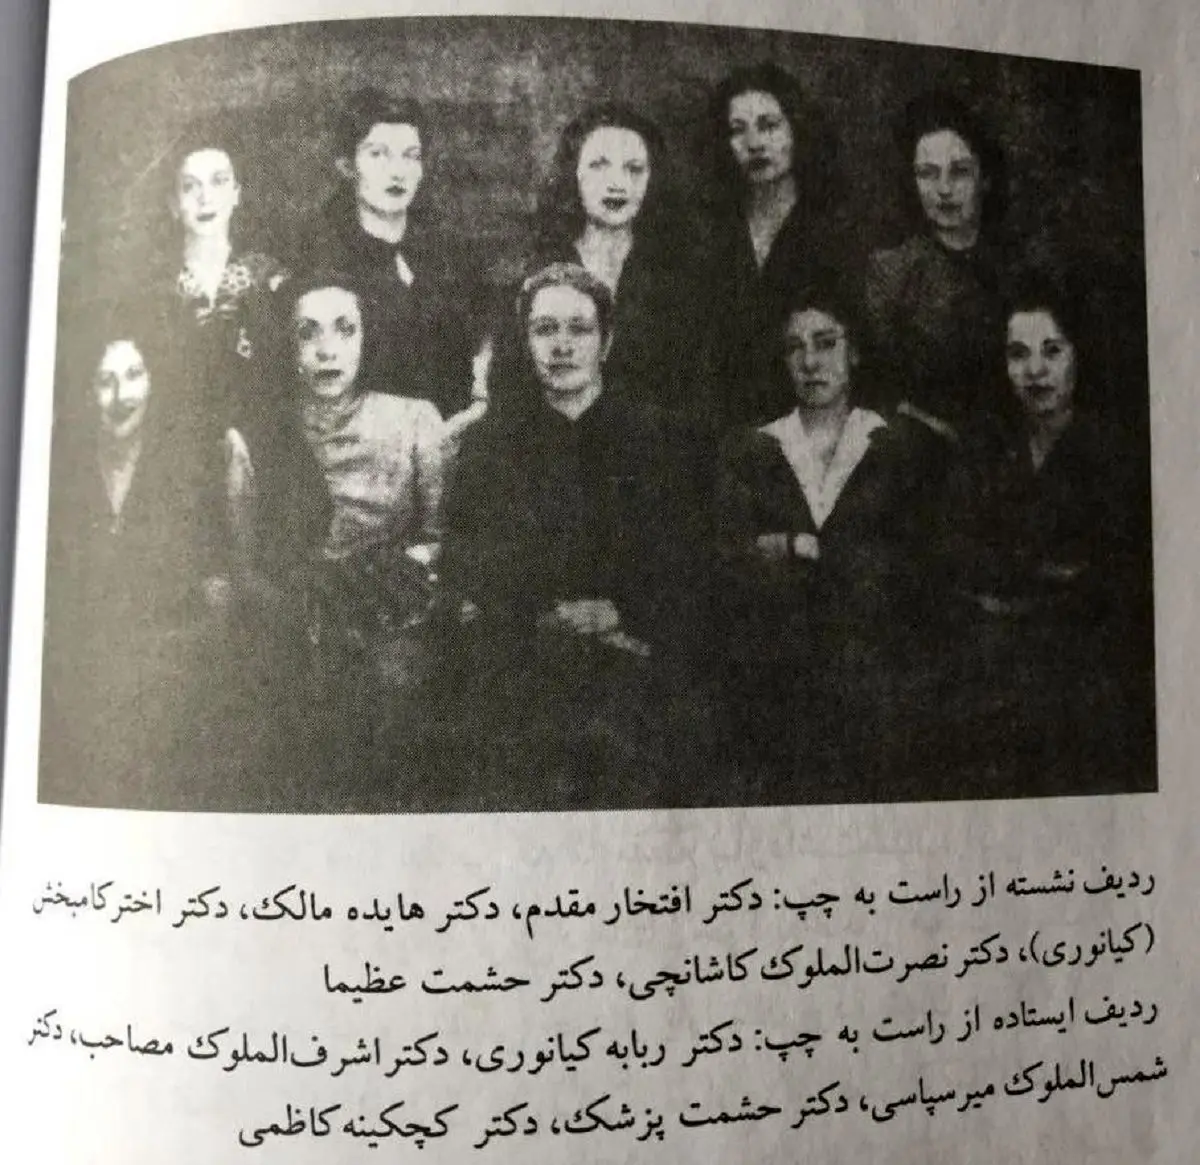 تصویری تاریخی از اولین گروه پزشکان زن ایرانی که از دانشگاه تهران فارغ التحصیل شدند